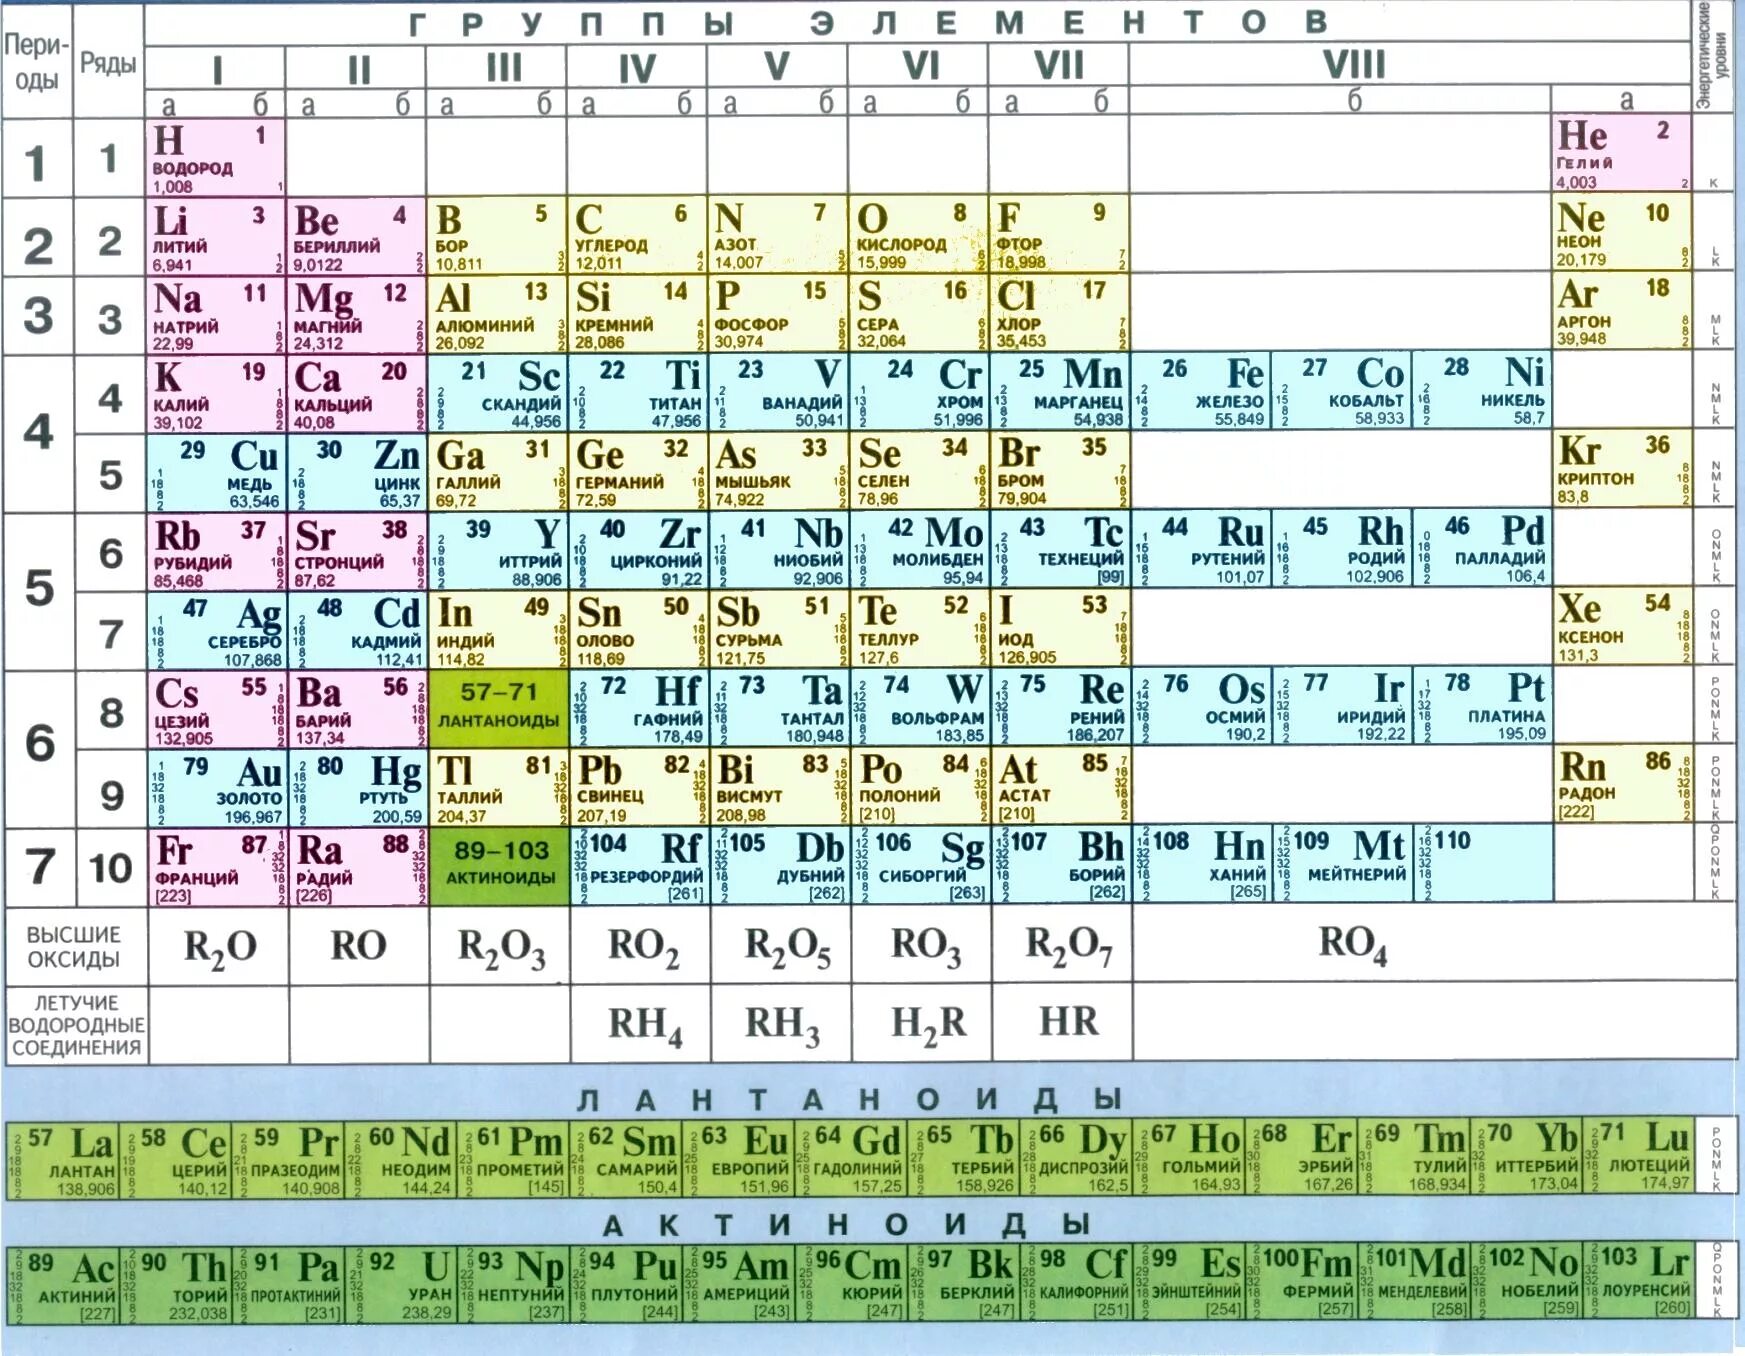 Короткопериодная таблица Менделеева. Химия 8 кл таблица Менделеева. Металлы в таблице Менделеева по химии 8 класс. Кальций кремний кислород и сера фтор